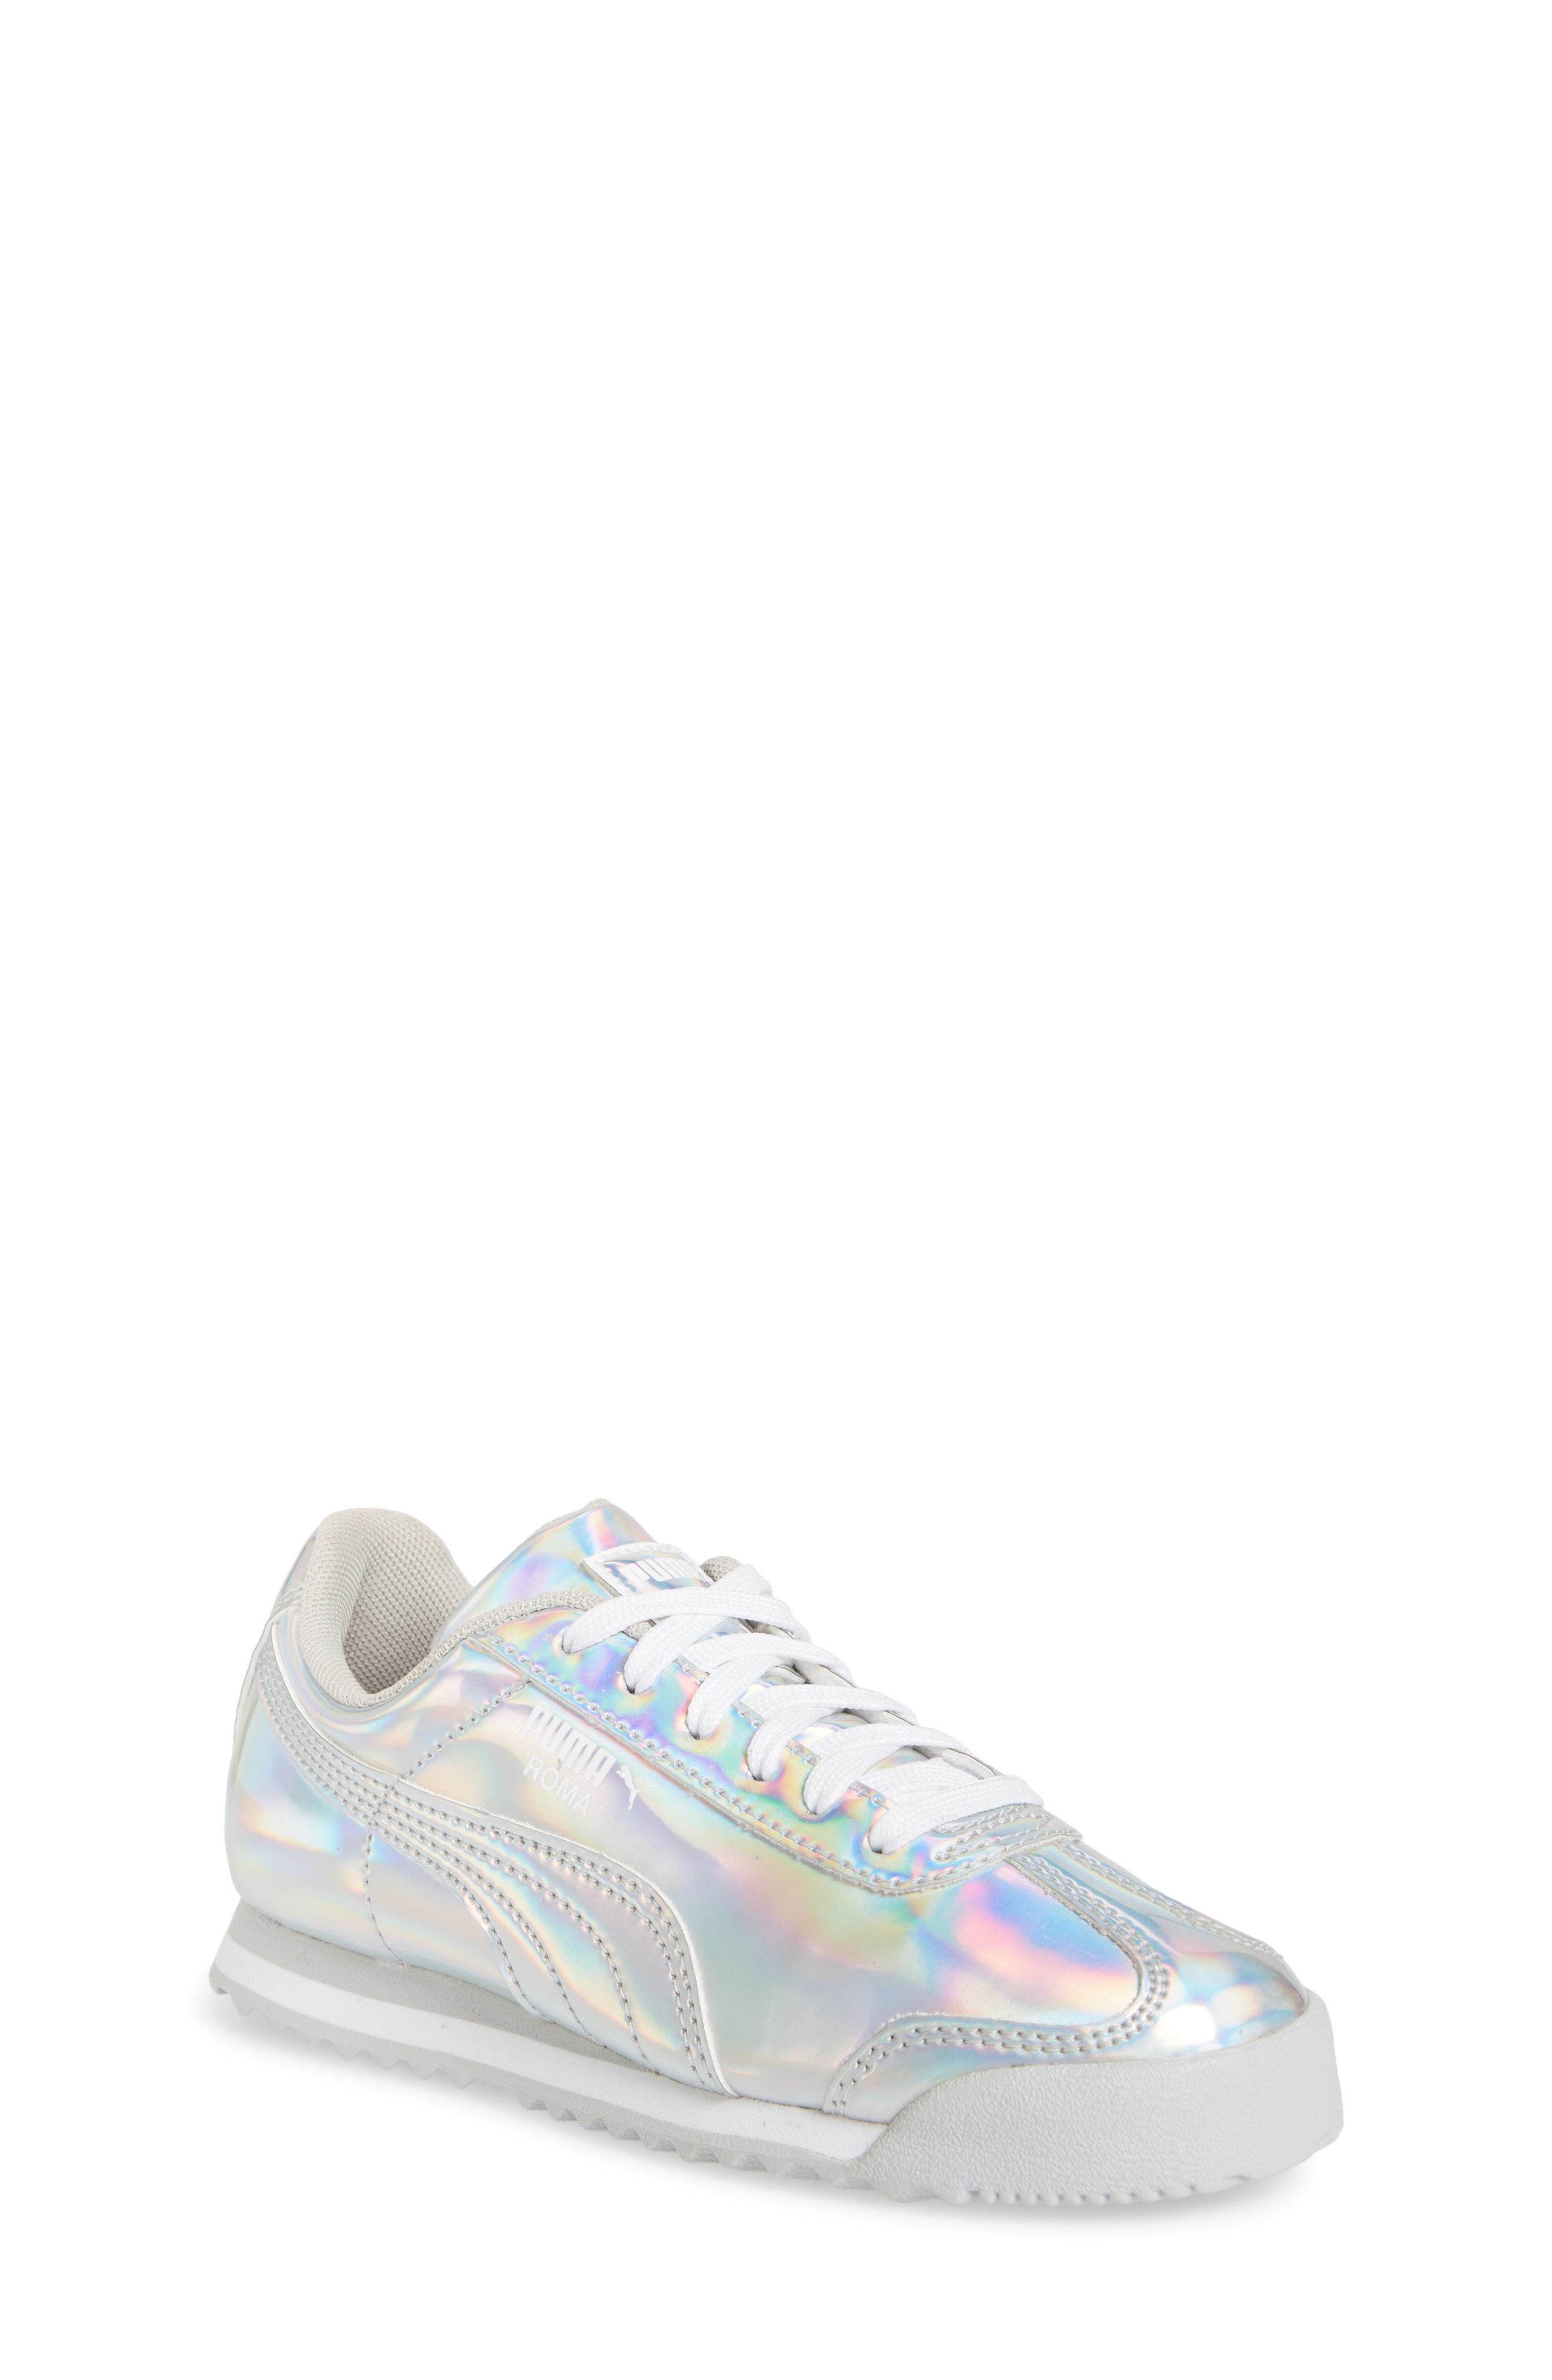 iridescent puma shoes